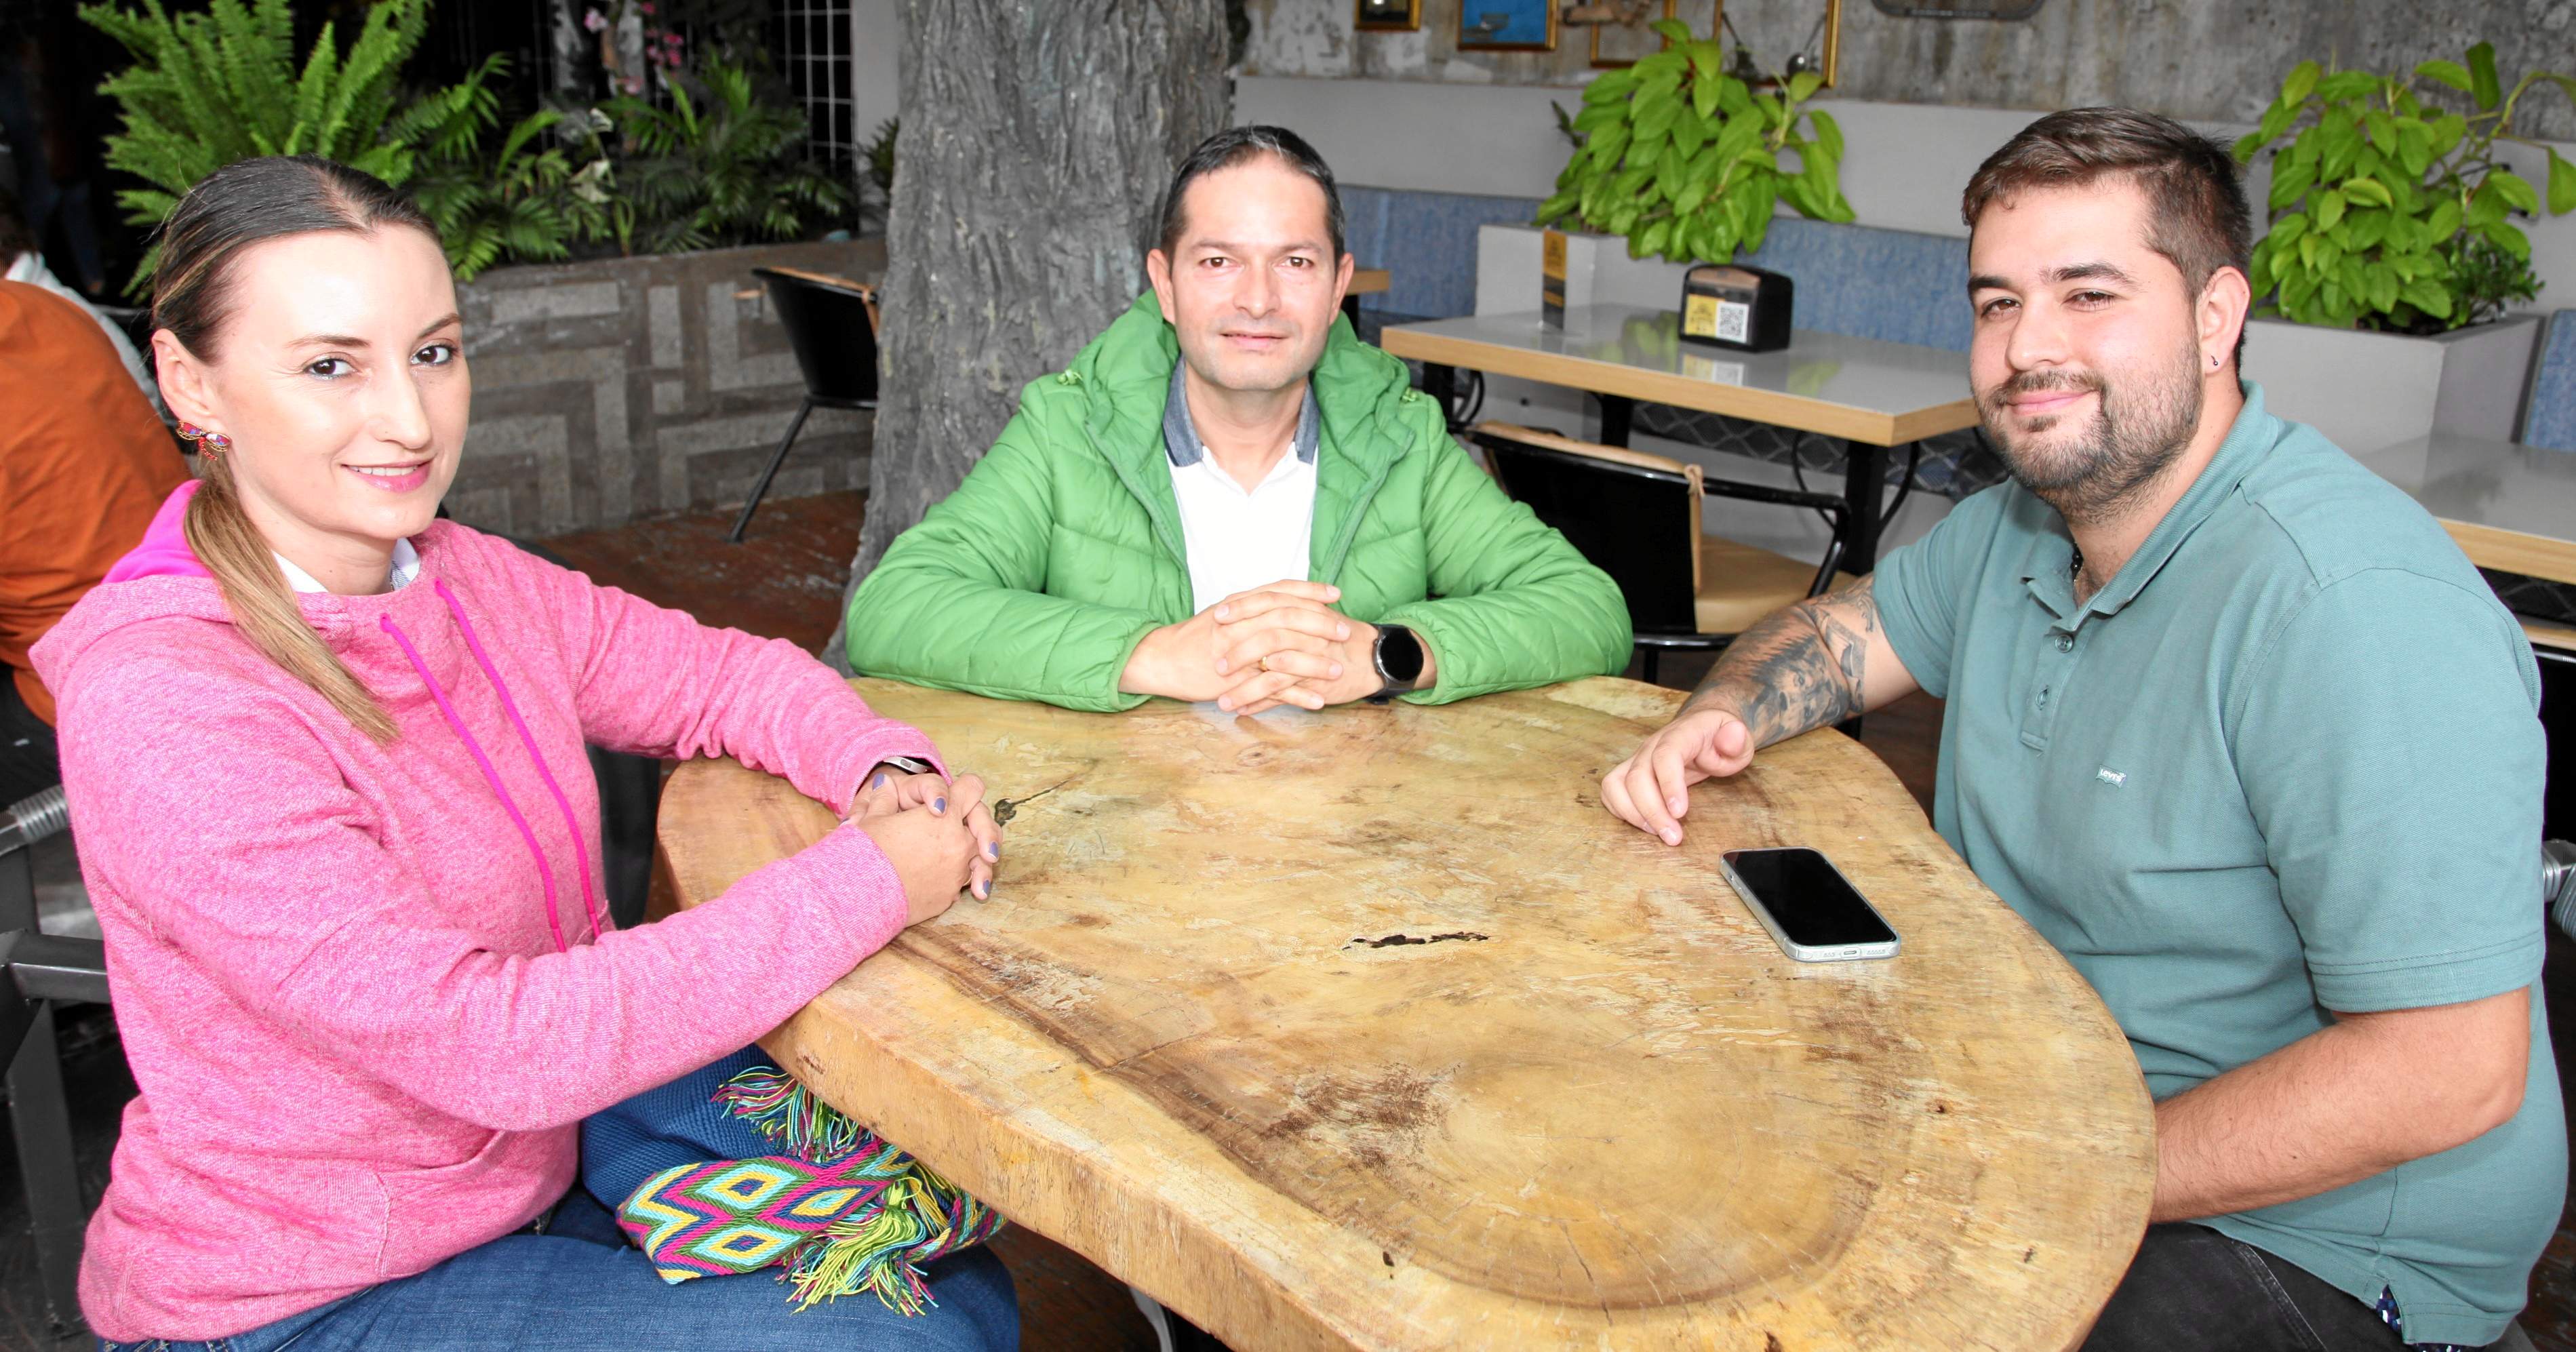 Ángela María Valencia, Juan Carlos Gallego y Alejandro Gallego compartieron un almuerzo en el restaurante El Efecto Barbacoa, ubicado en el barrio Milán.